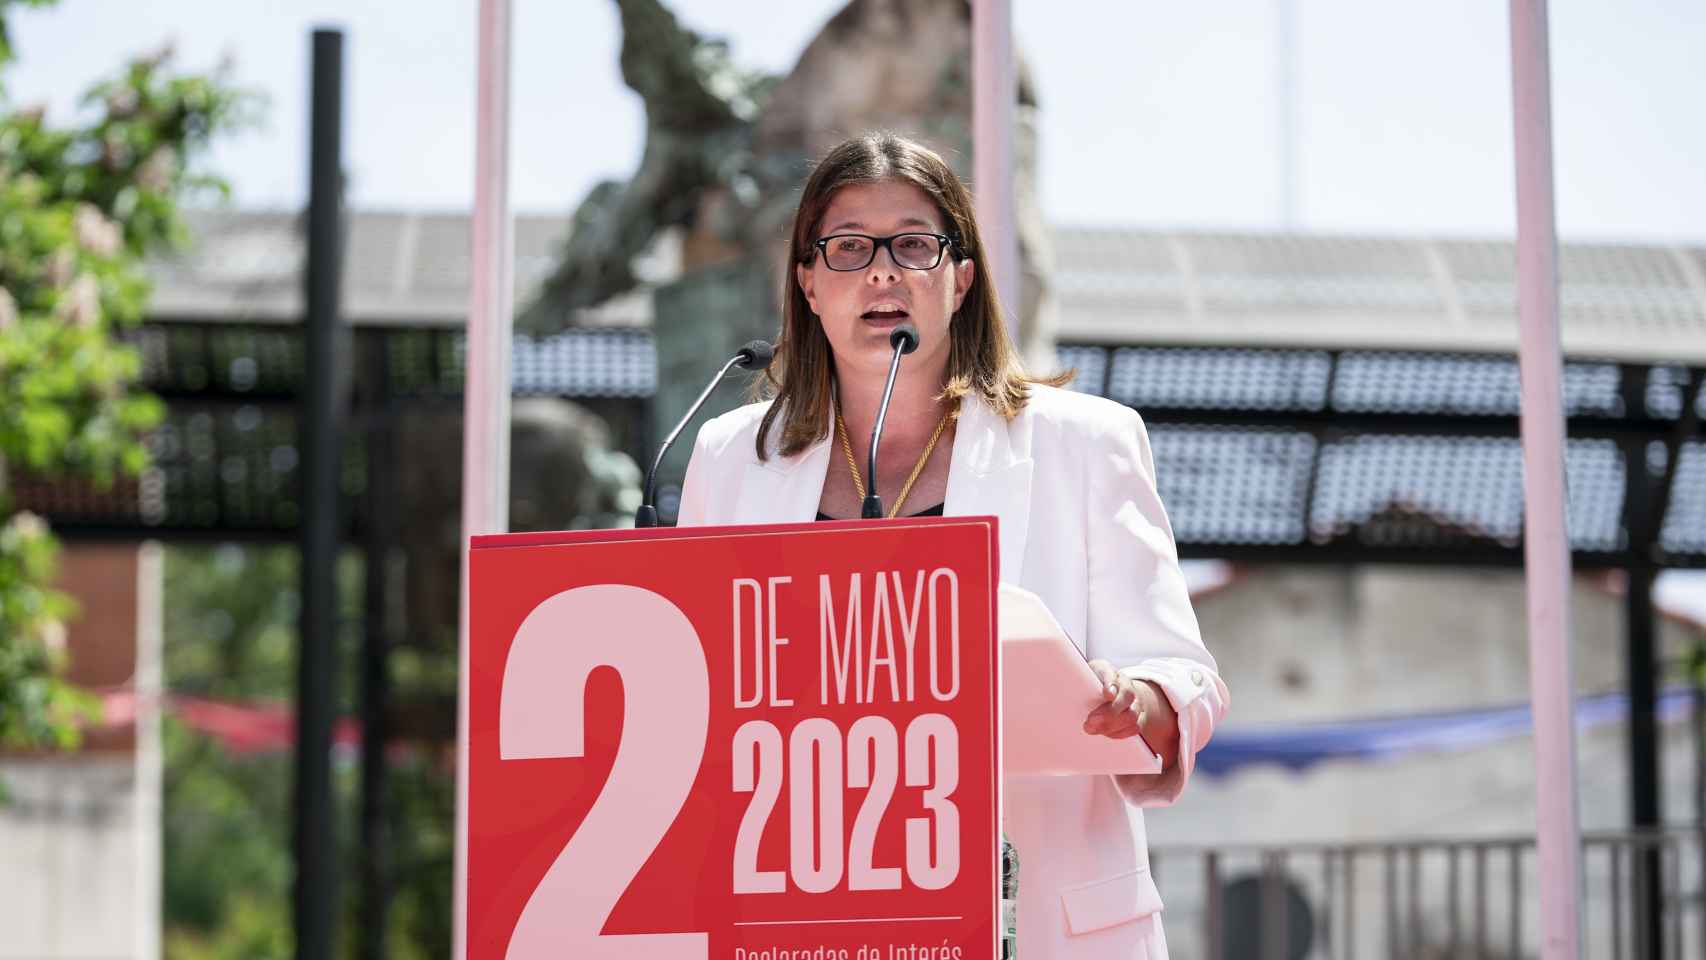 La alcaldesa de Móstoles, Noelia Posse, en una imagen reciente.